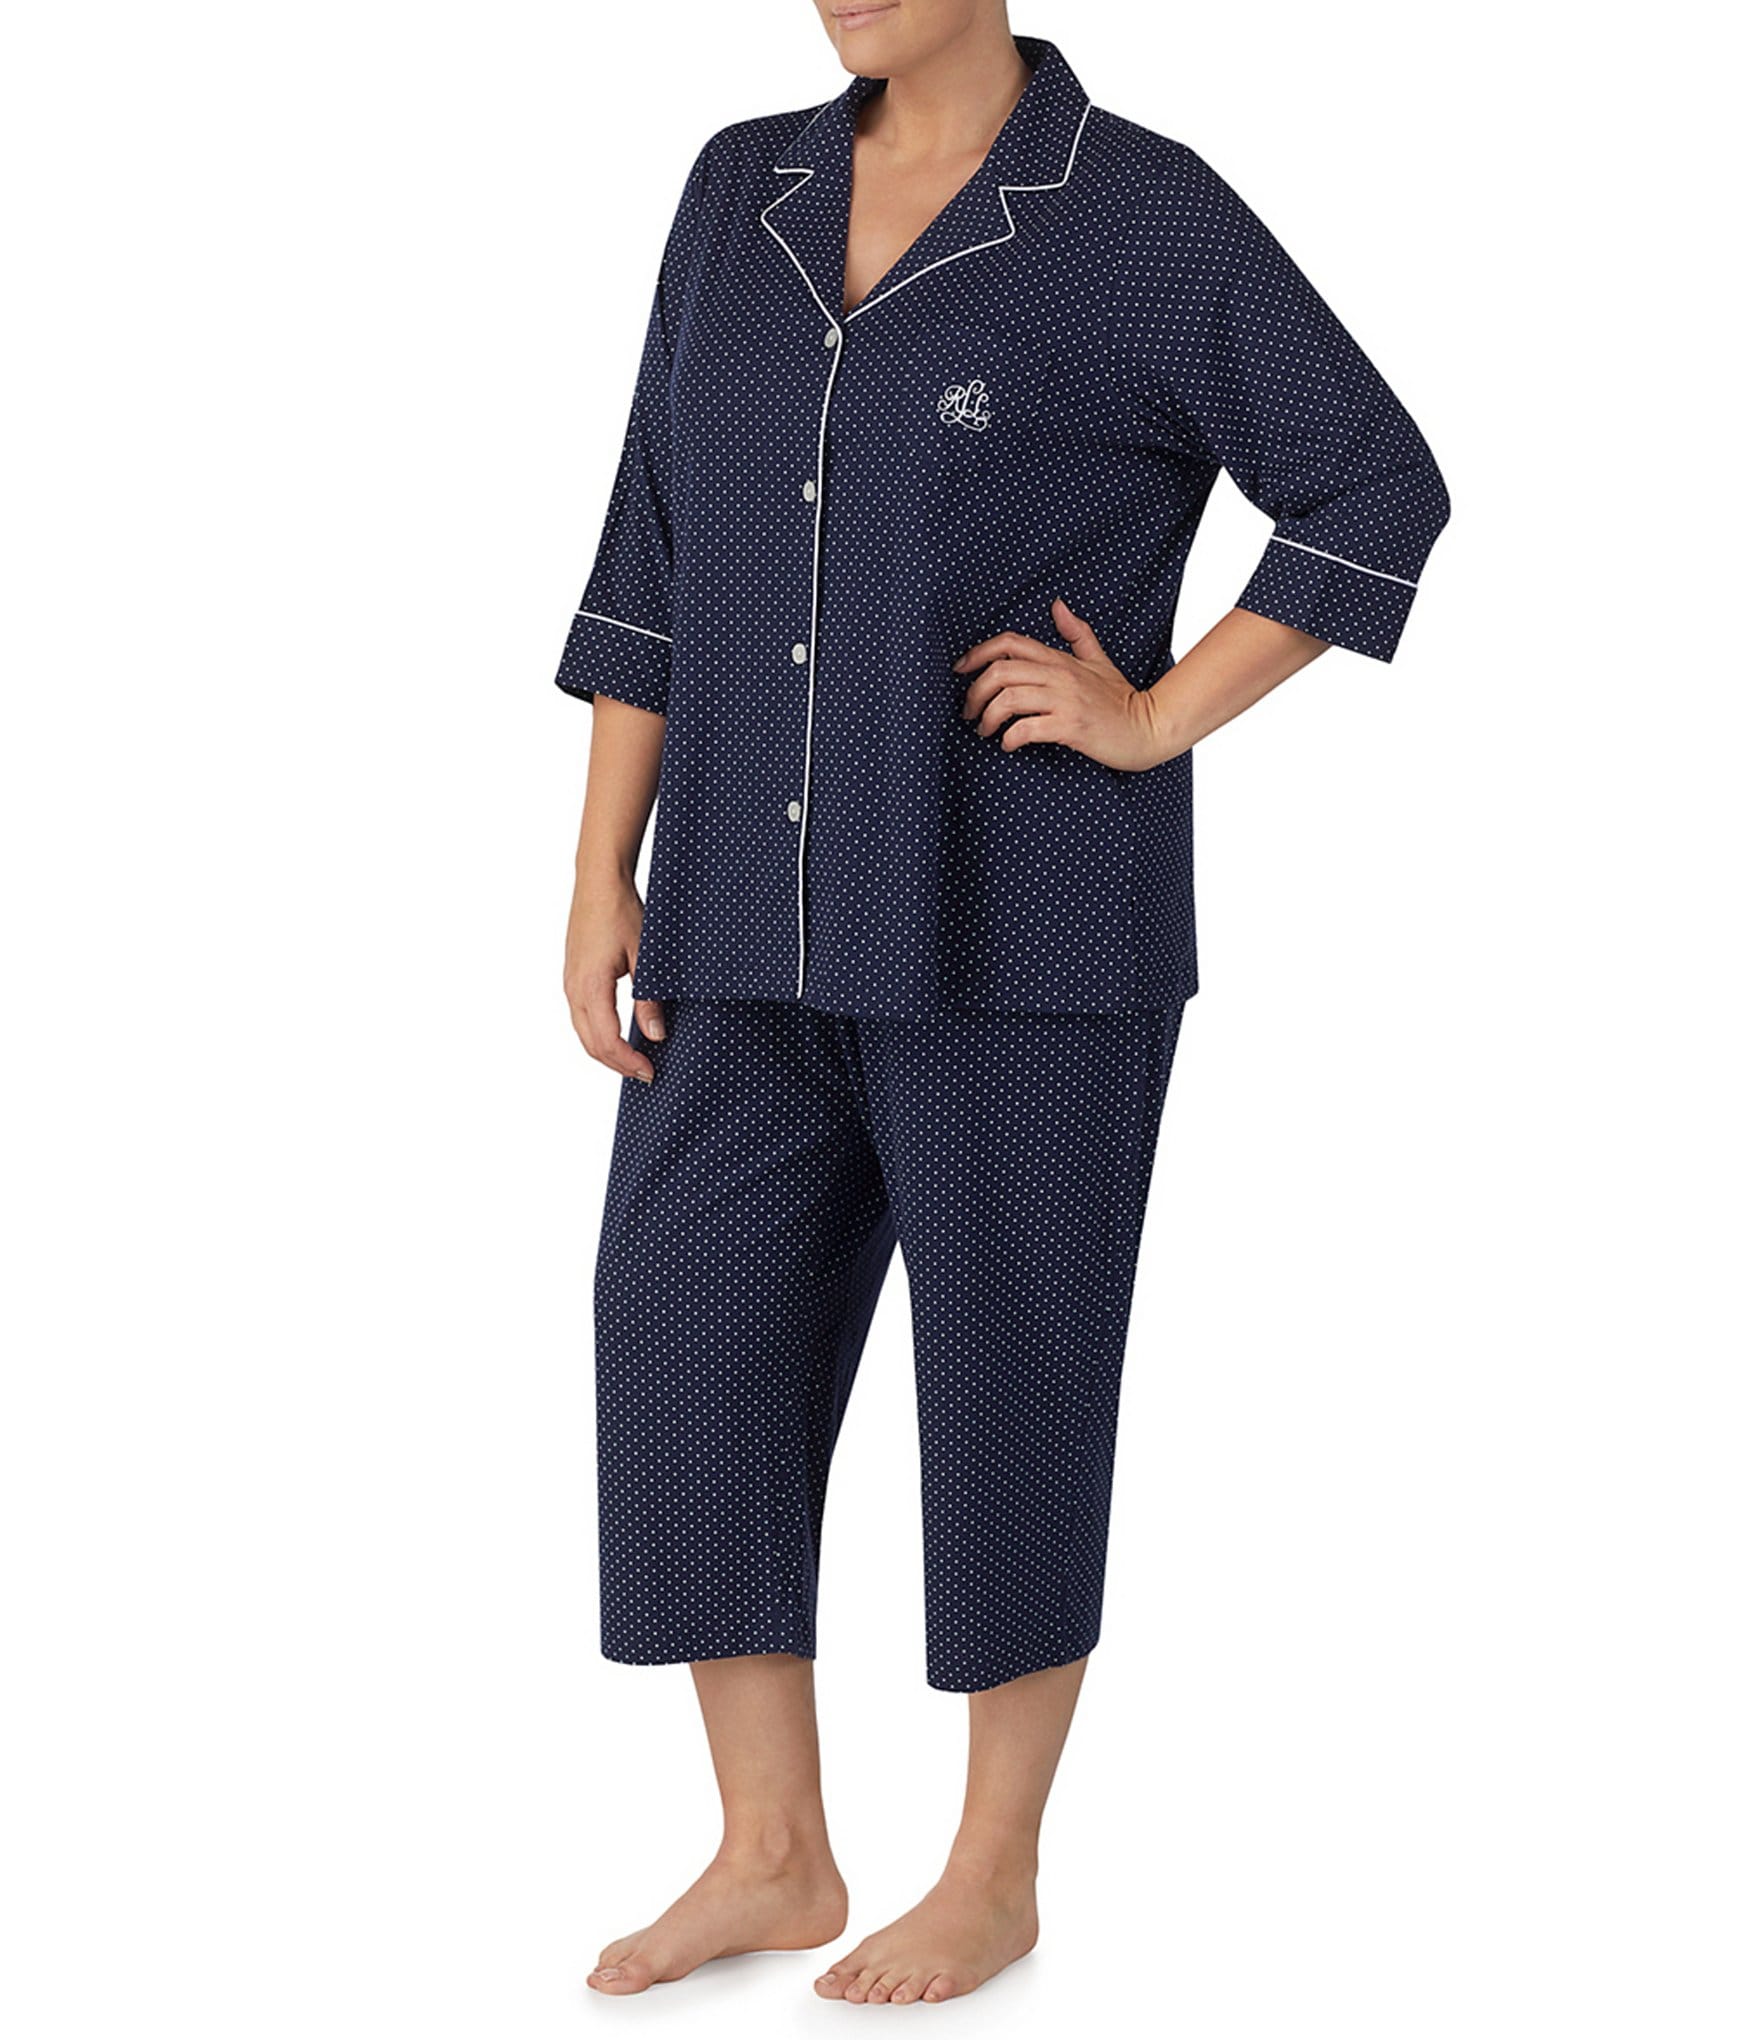 Lauren Ralph Lauren Pajamas & Sleepwear | Dillard's